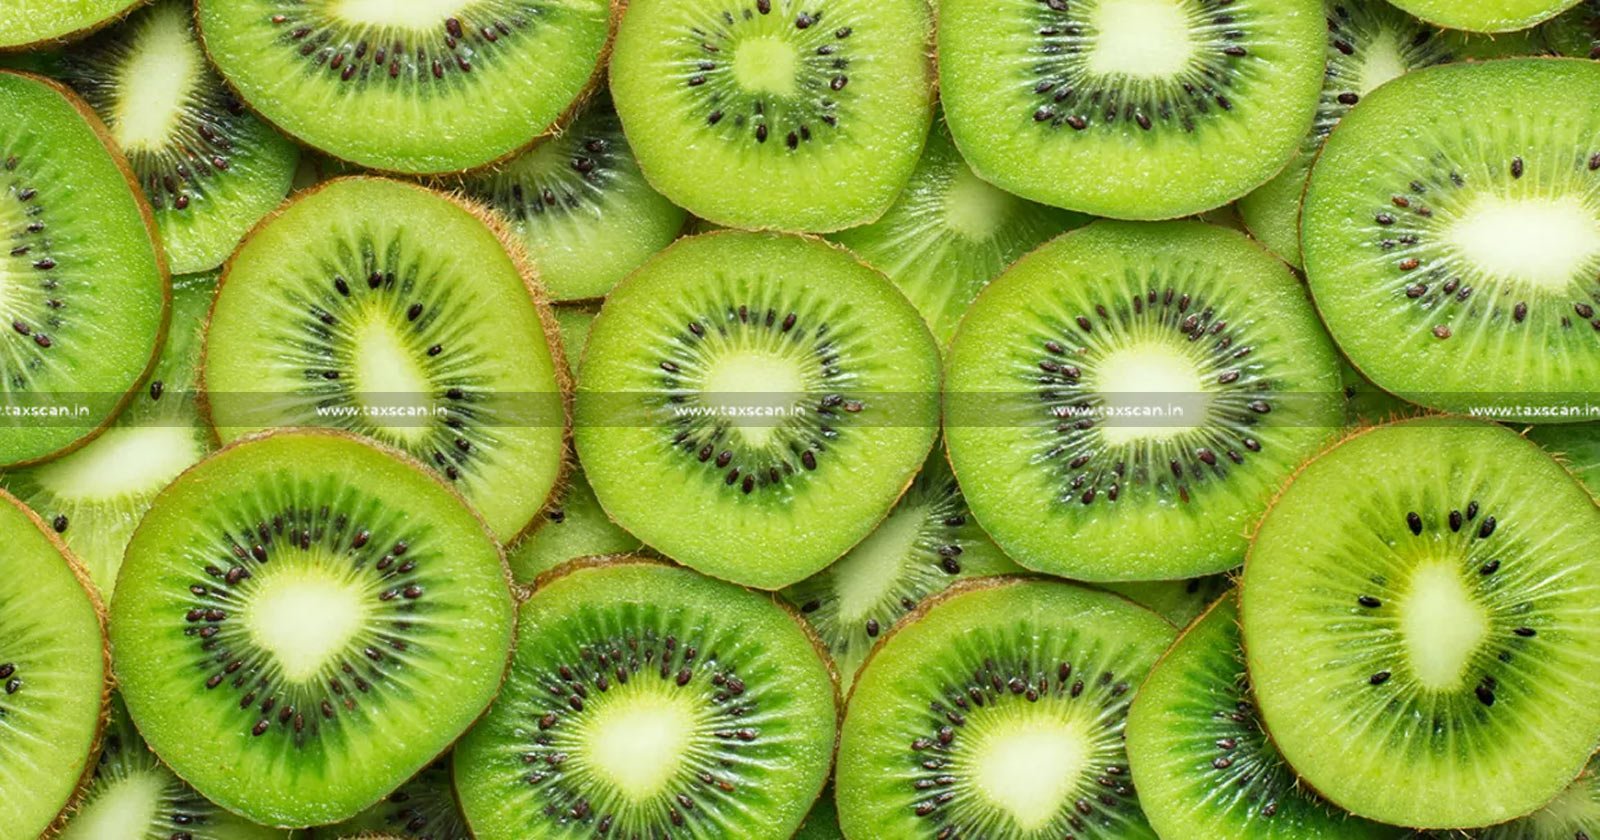 CESTAT - Kiwi Fruit - Re-export of Kiwi Fruit Delayed - TAXSCAN